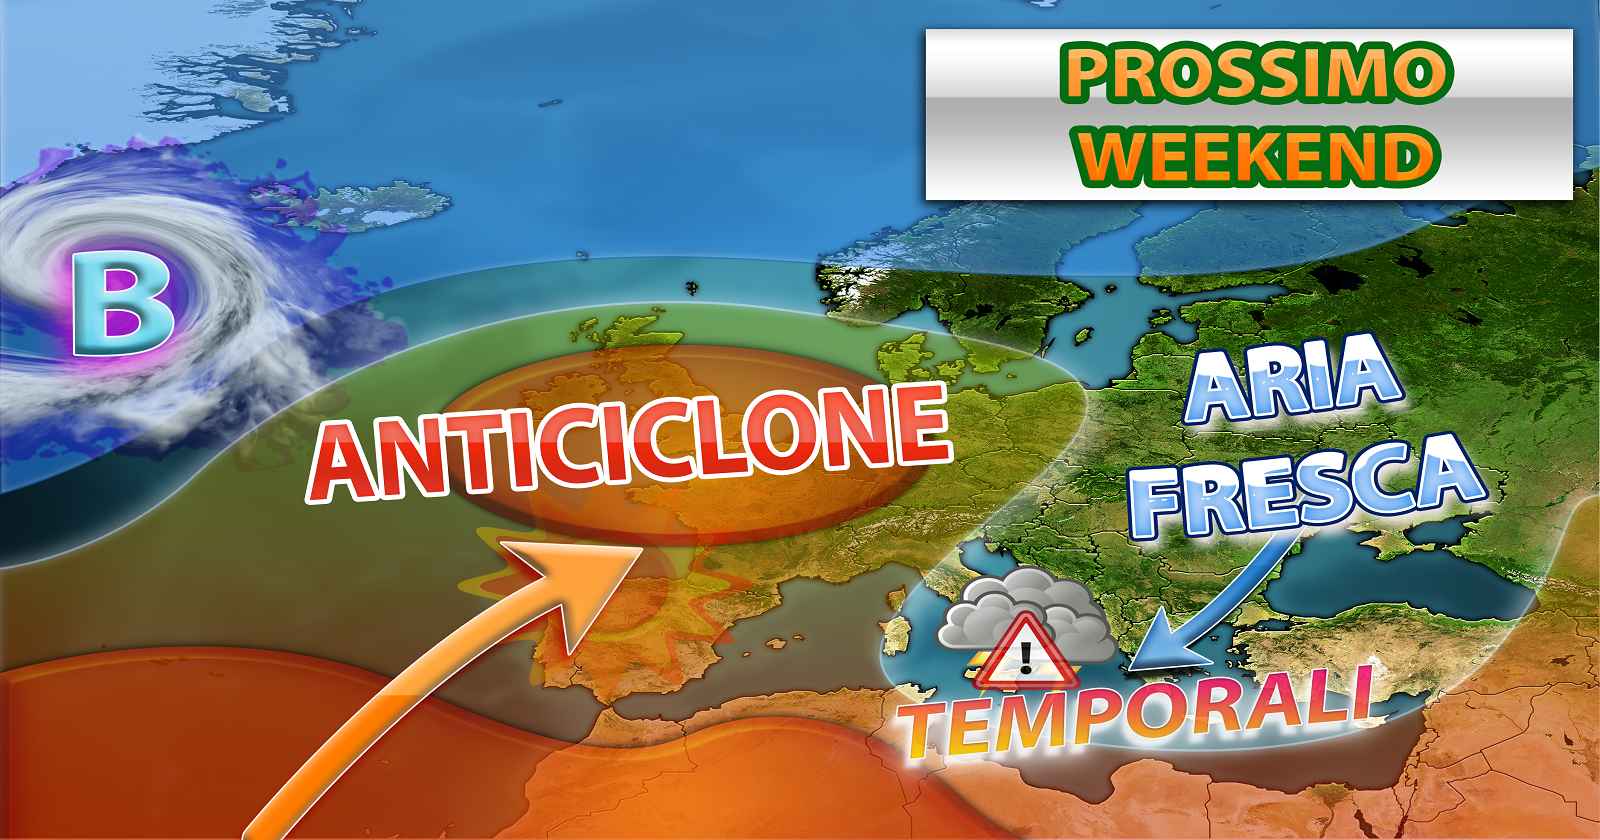 METEO WEEKEND - SCISSIONE dell'ITALIA in due zone, tra PIOGGE e TEMPORALI e BEL TEMPO, i dettagli